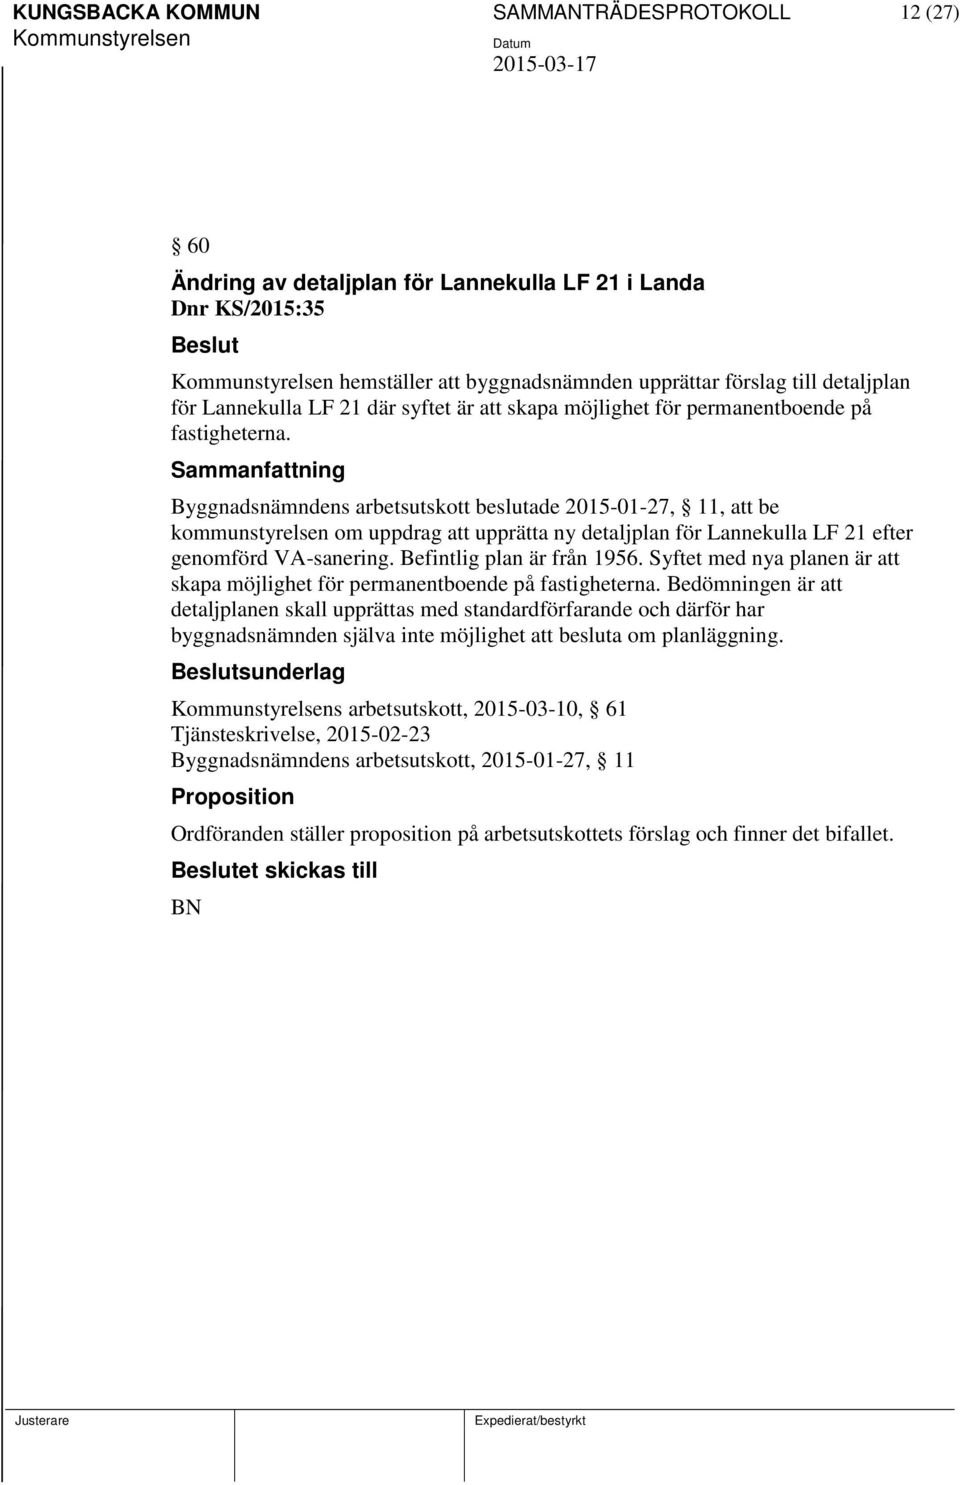 Byggnadsnämndens arbetsutskott beslutade 2015-01-27, 11, att be kommunstyrelsen om uppdrag att upprätta ny detaljplan för Lannekulla LF 21 efter genomförd VA-sanering. Befintlig plan är från 1956.